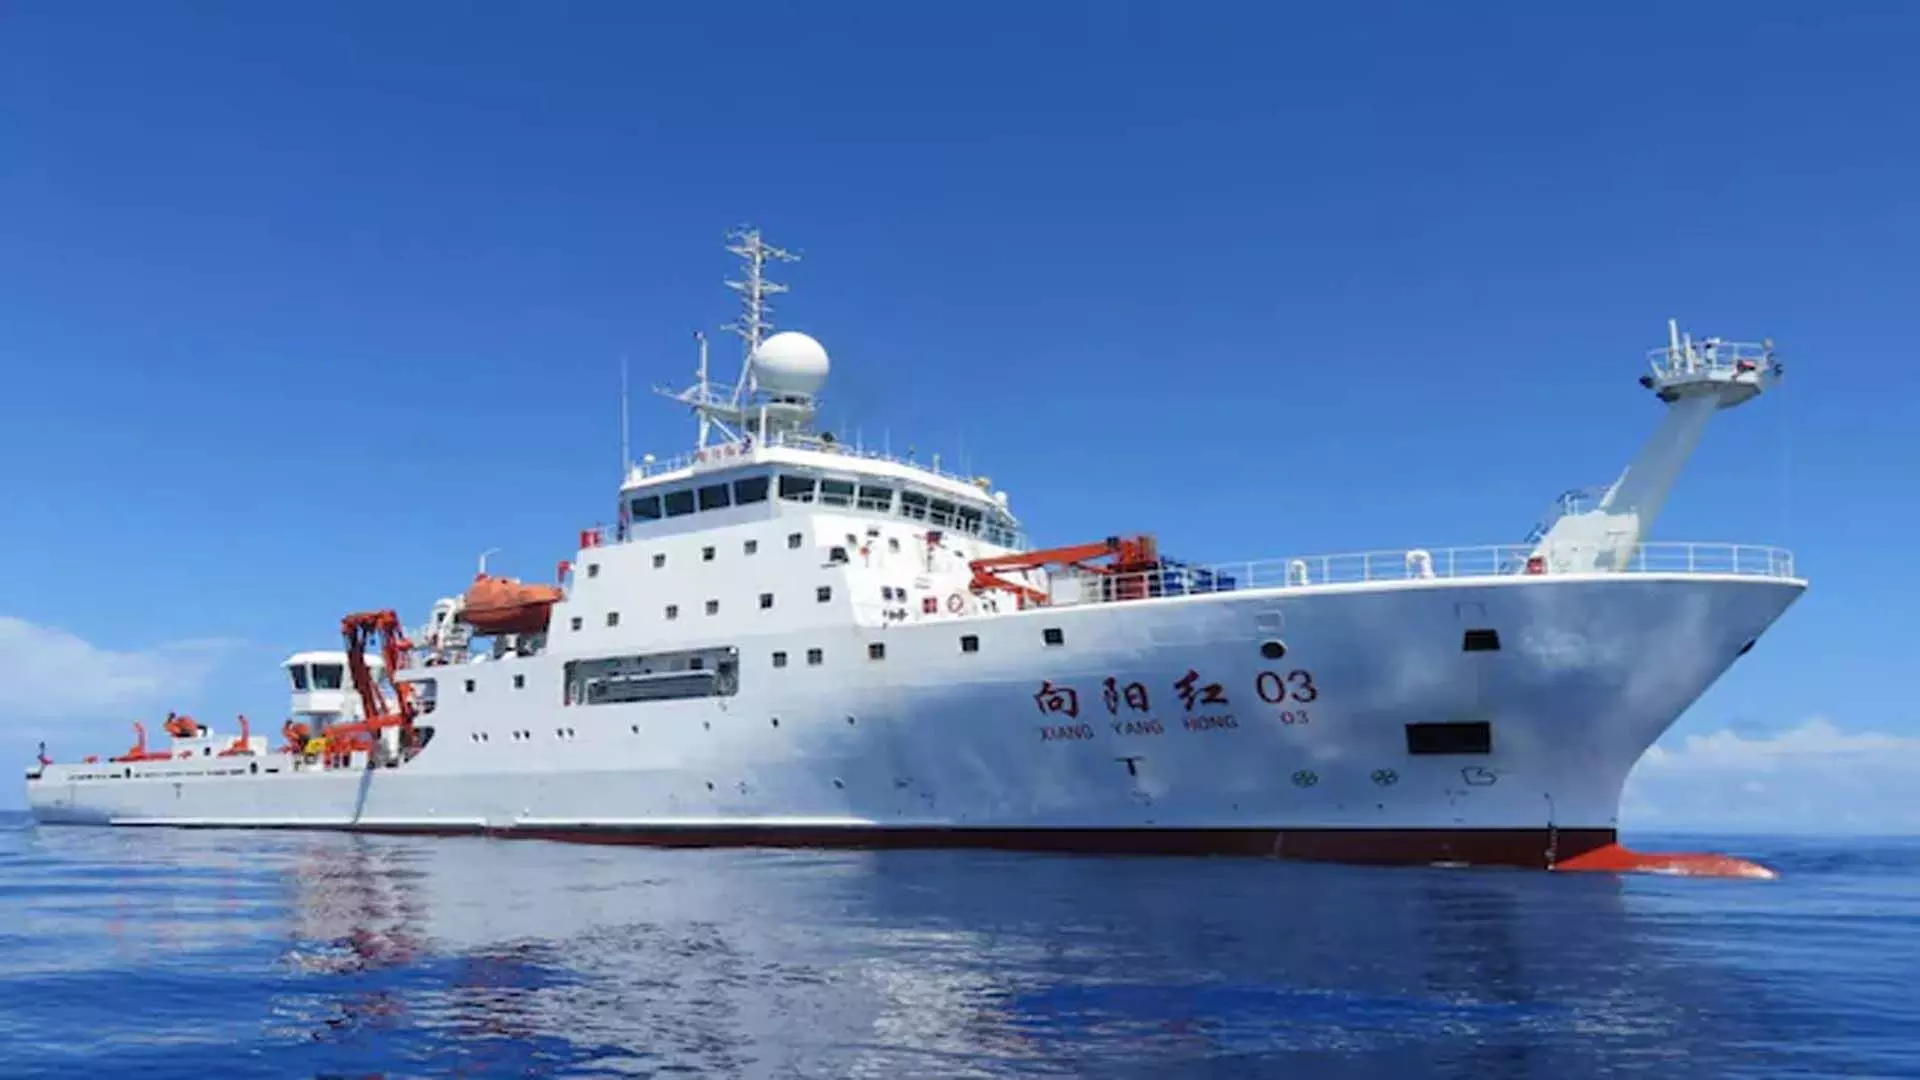 चीनी जासूस जहाज के वापस लौटने पर मालदीव ने नहीं बताया कारण, रिपोर्ट